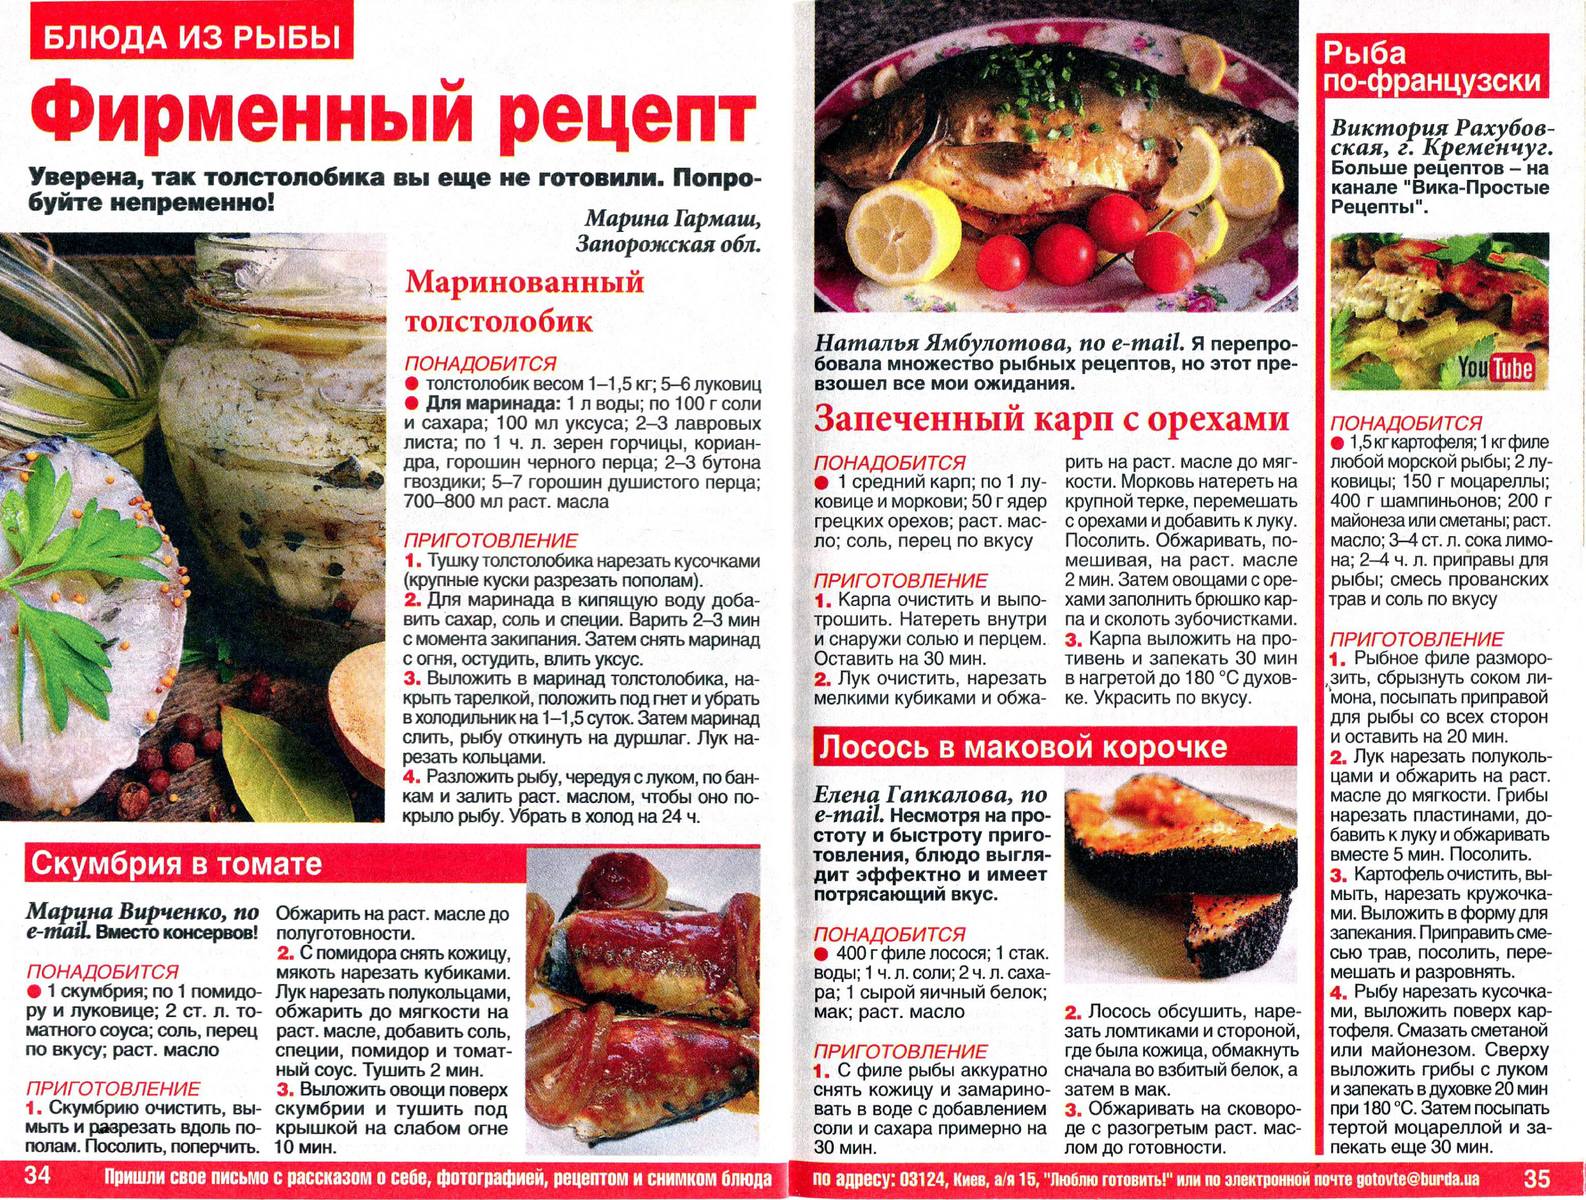 Какой маринад для рыбы. Кулинария рецепты. Рецепты из журналов. Журнал с рецептами. Блюда с рыбой рецепты.